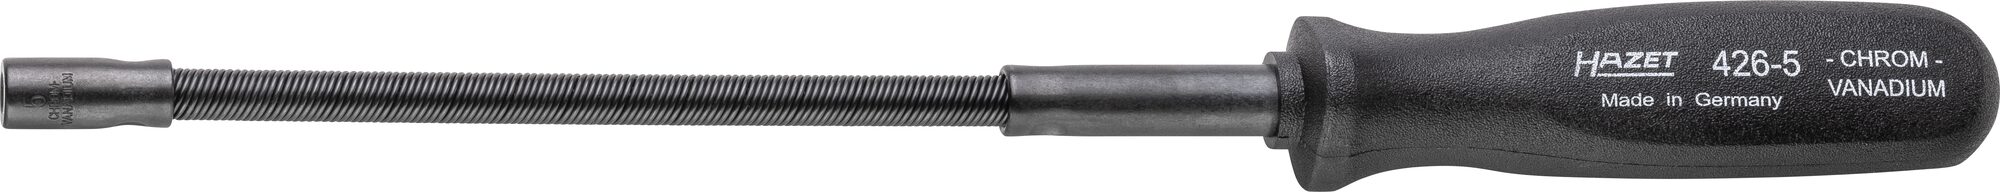 HAZET Steckschlüssel · flexibel 426-5 · Außen Sechskant Profil · 5 mm